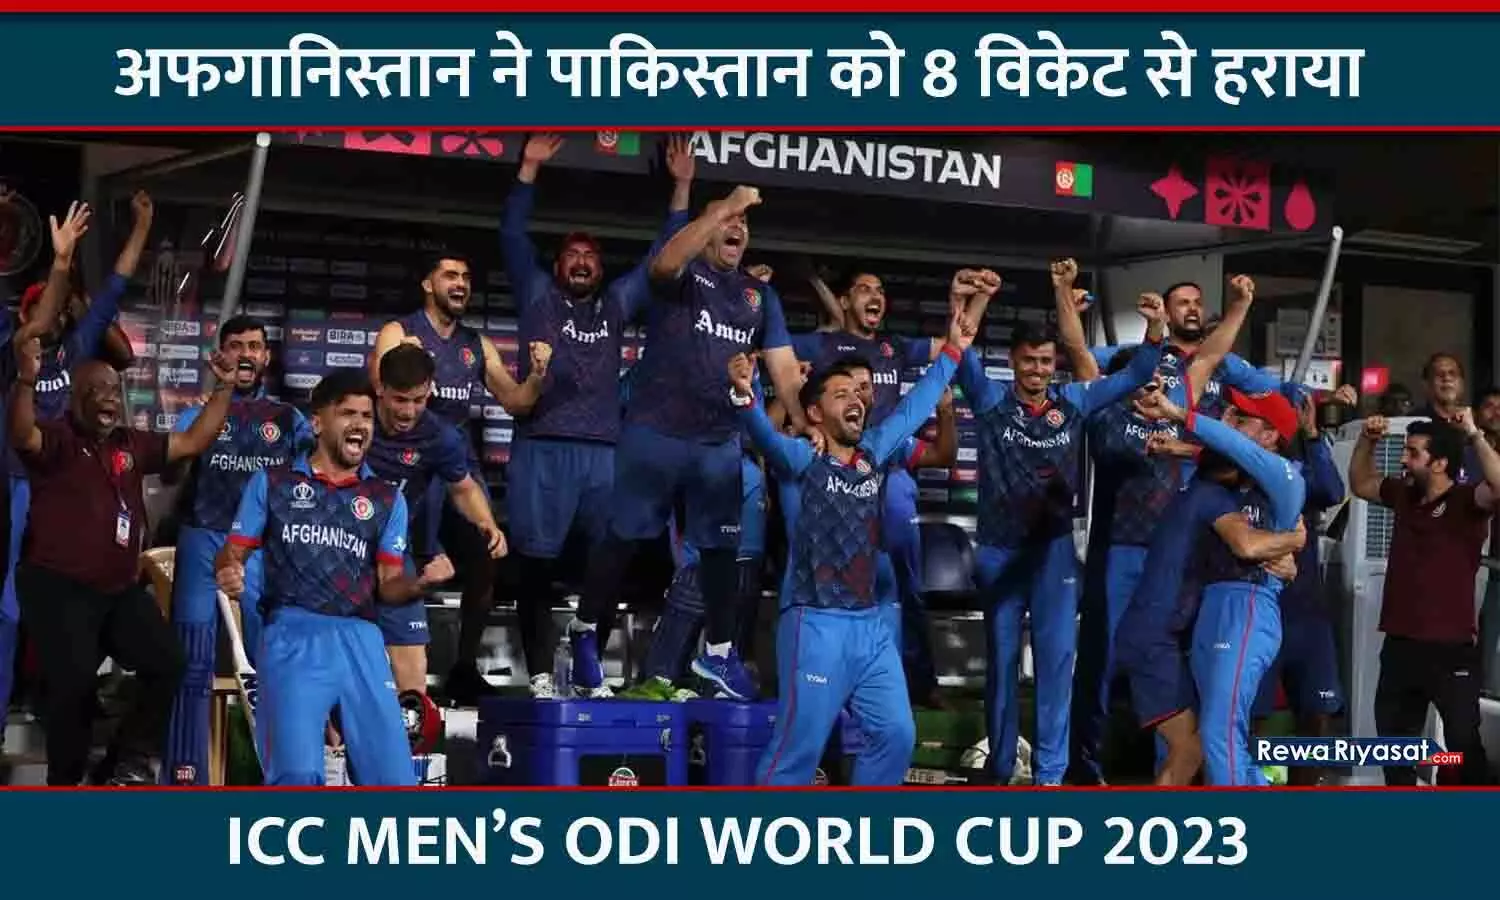 वर्ल्ड कप 2023 का तीसरा बड़ा उलटफेर: अफगानिस्तान ने पाकिस्तान को पहली बार ODI में हराया, 49 ओवर में चेज किया 283 का टारगेट